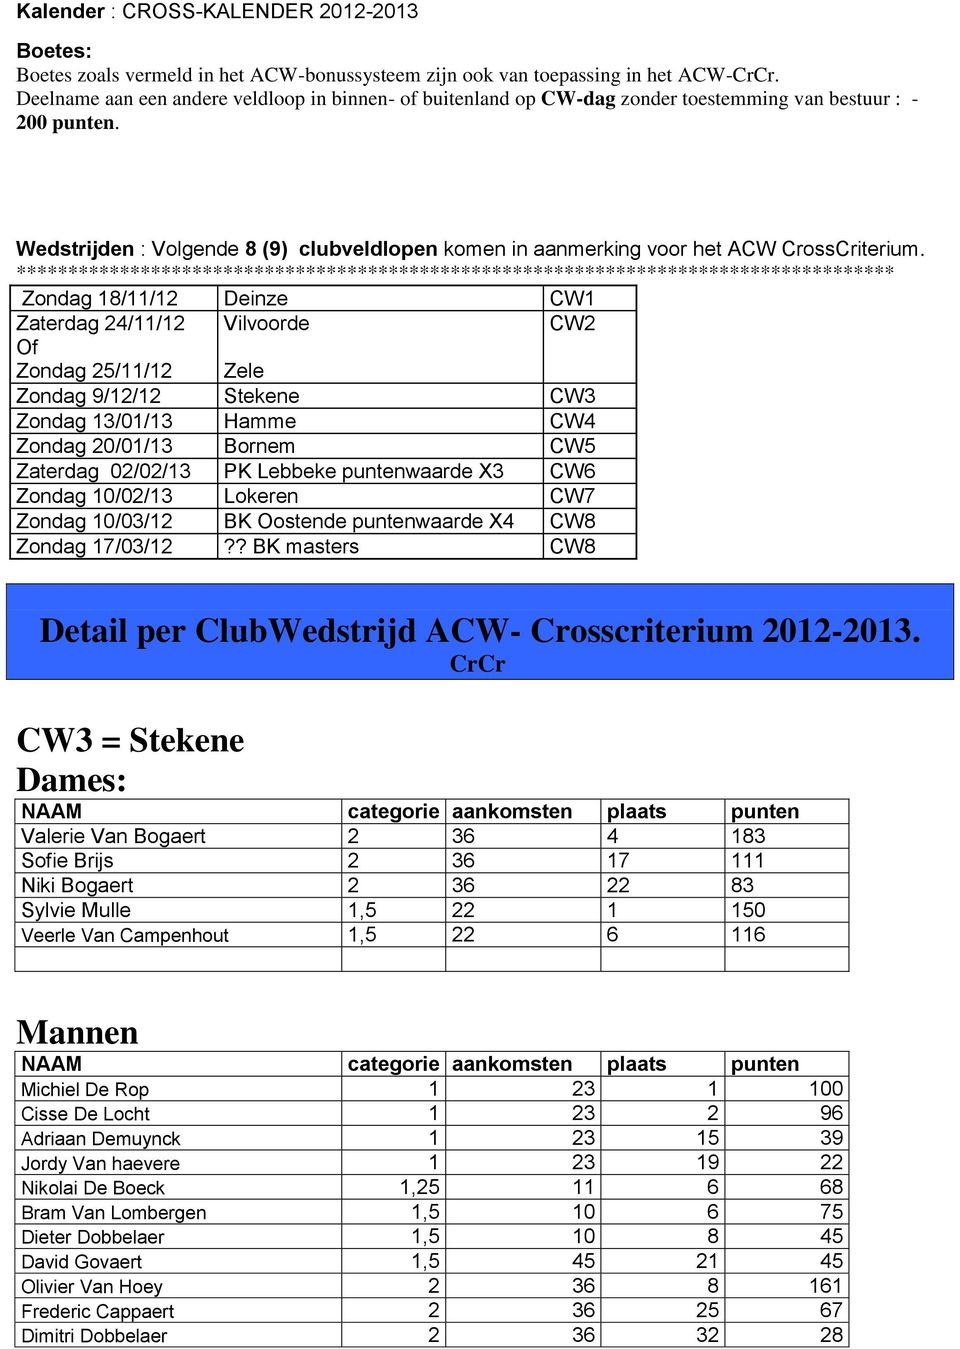 Wedstrijden : Volgende 8 (9) clubveldlopen komen in aanmerking voor het ACW CrossCriterium.